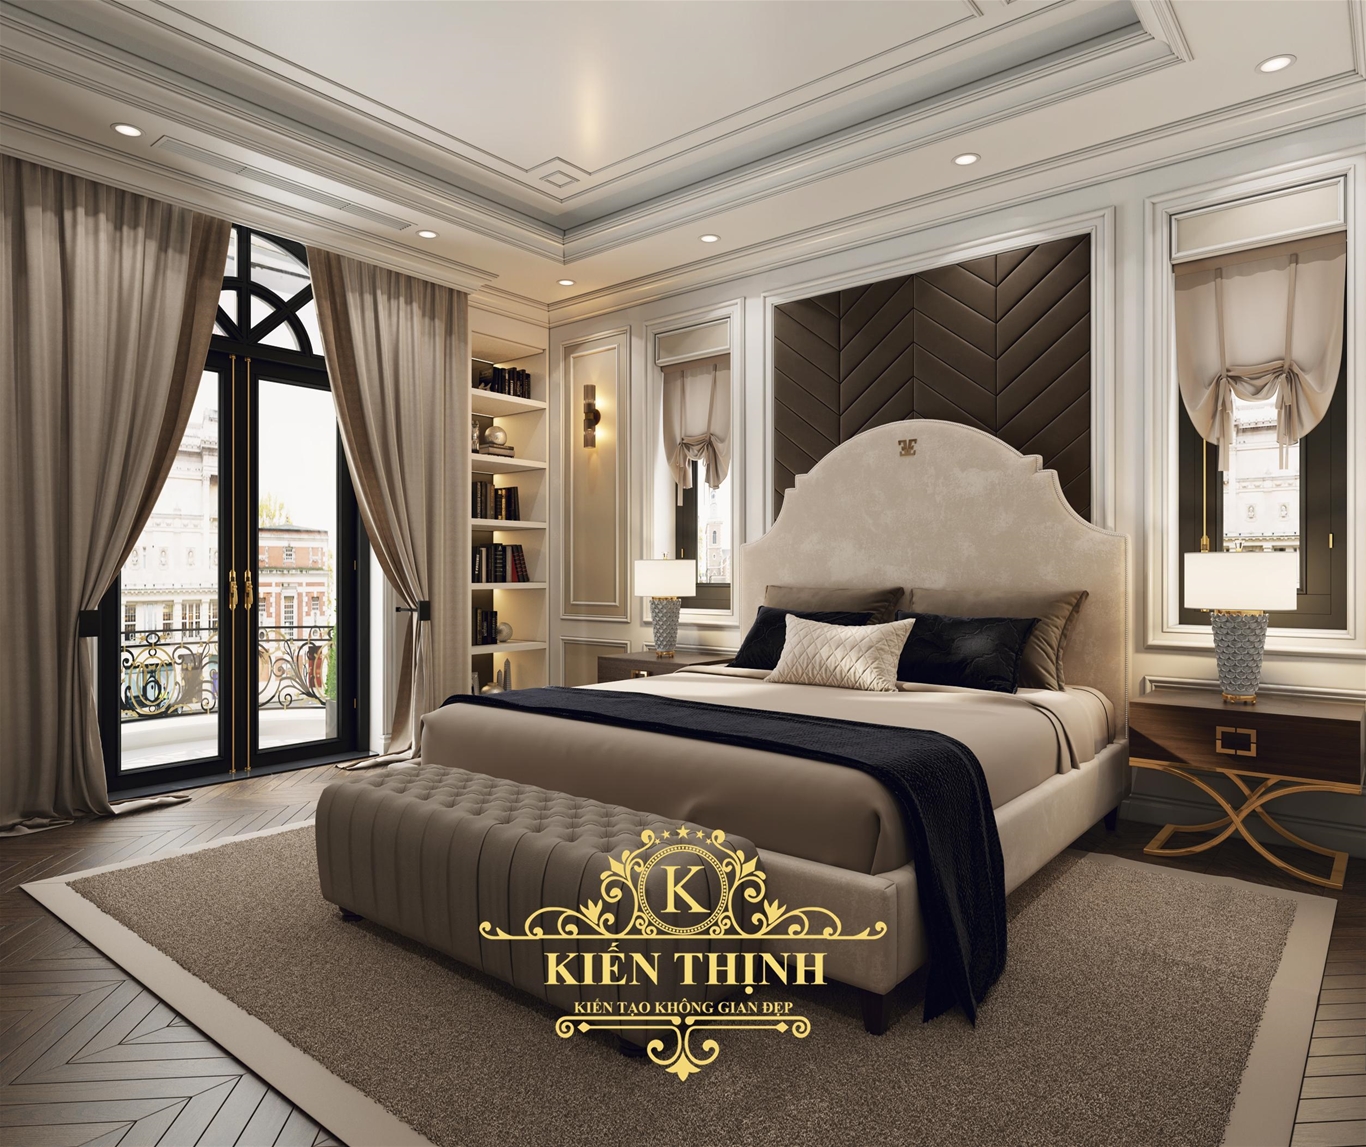 Thiết kế nội thất phòng khách biệt thự tân cổ điển châu Âu nhẹ nhàng và sang trọng